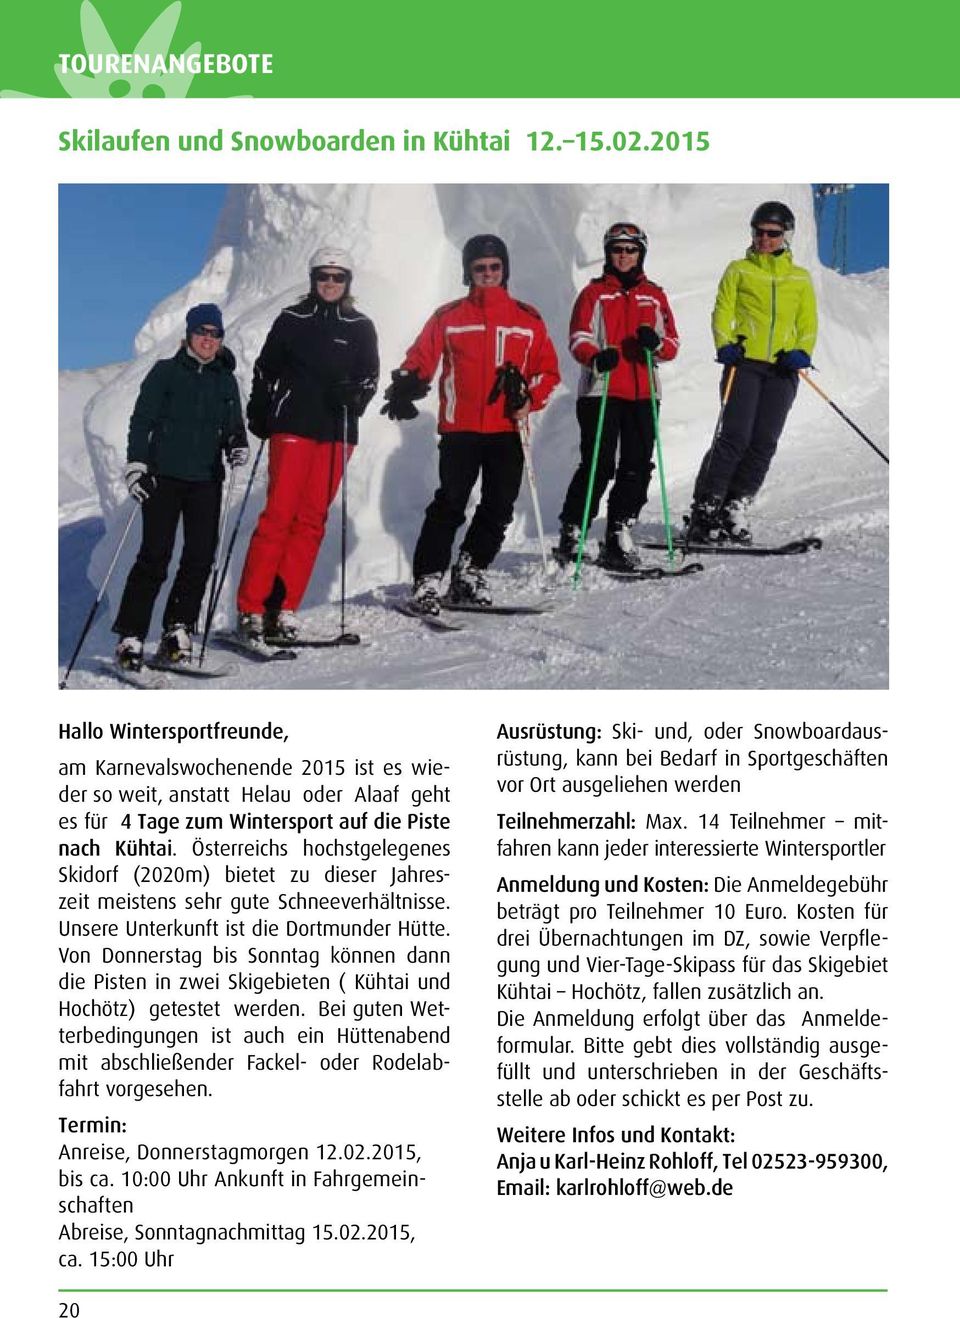 Österreichs hochstgelegenes Skidorf (2020m) bietet zu dieser Jahreszeit meistens sehr gute Schneeverhältnisse. Unsere Unterkunft ist die Dortmunder Hütte.